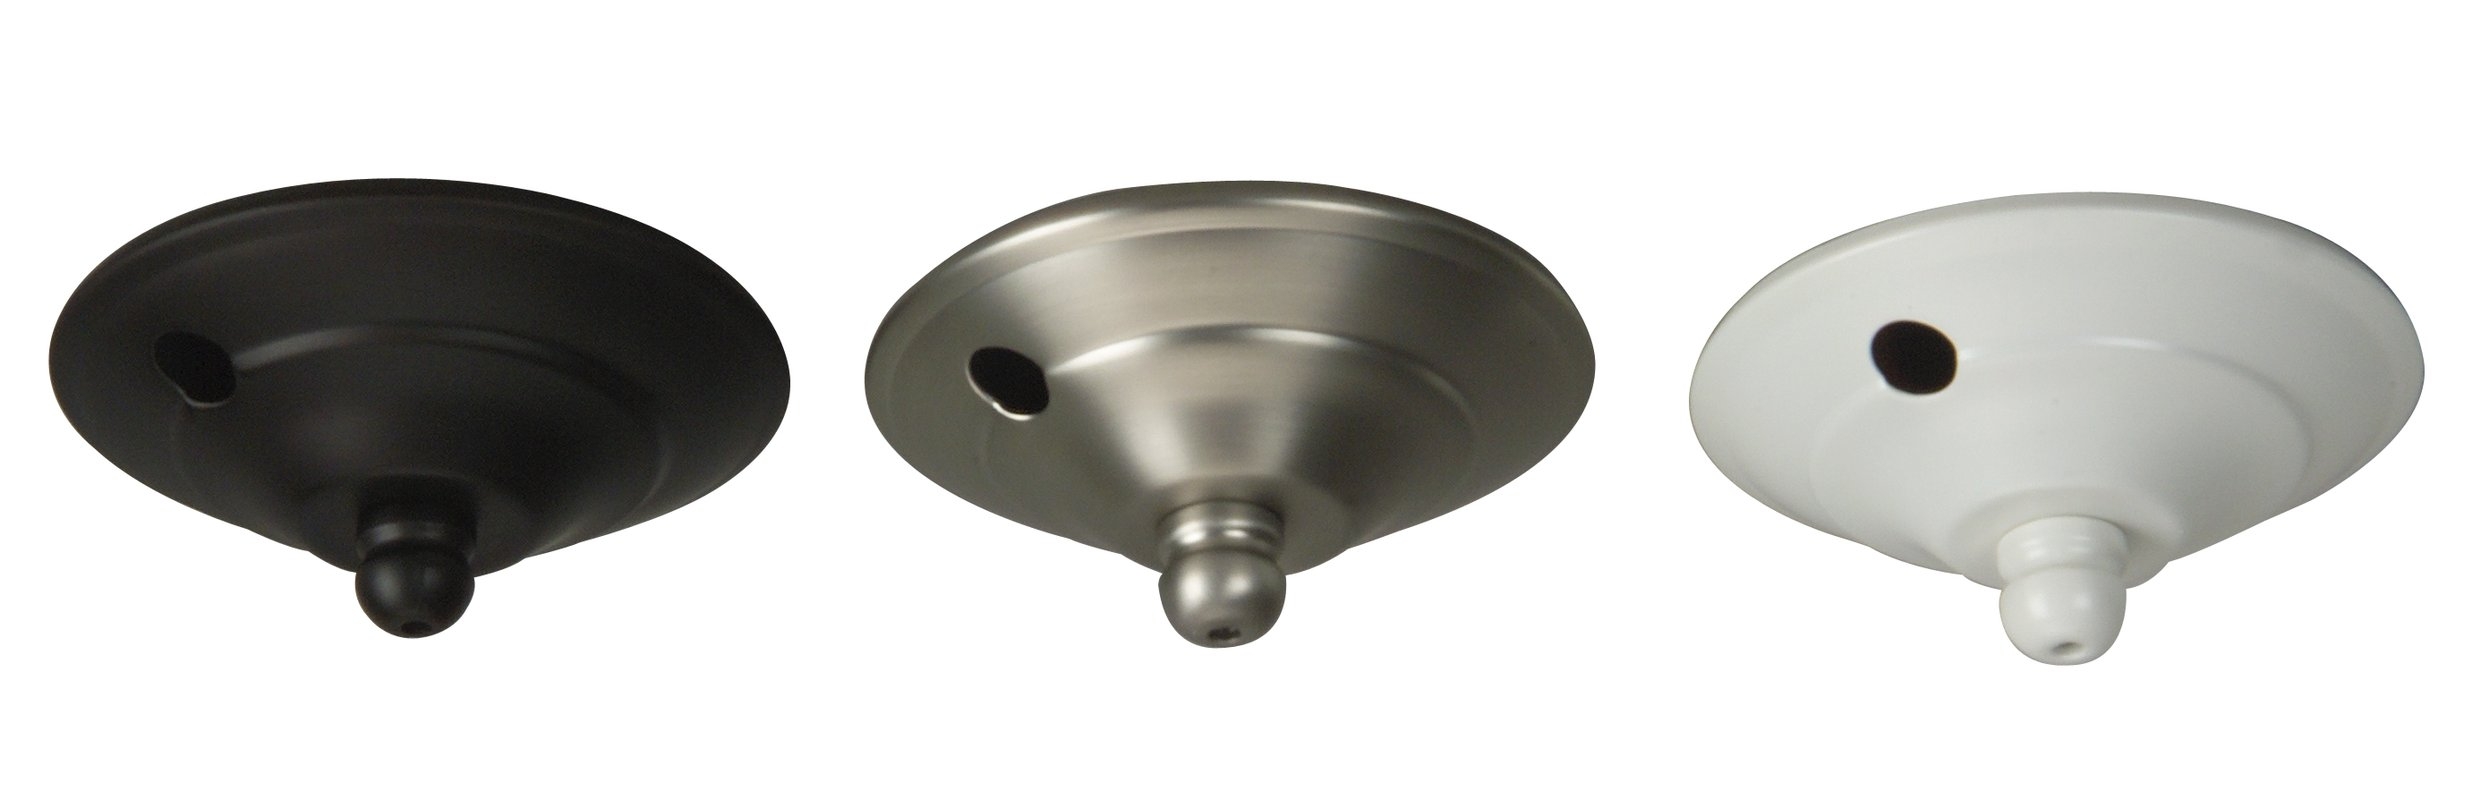 Ceiling Fan Light Cap